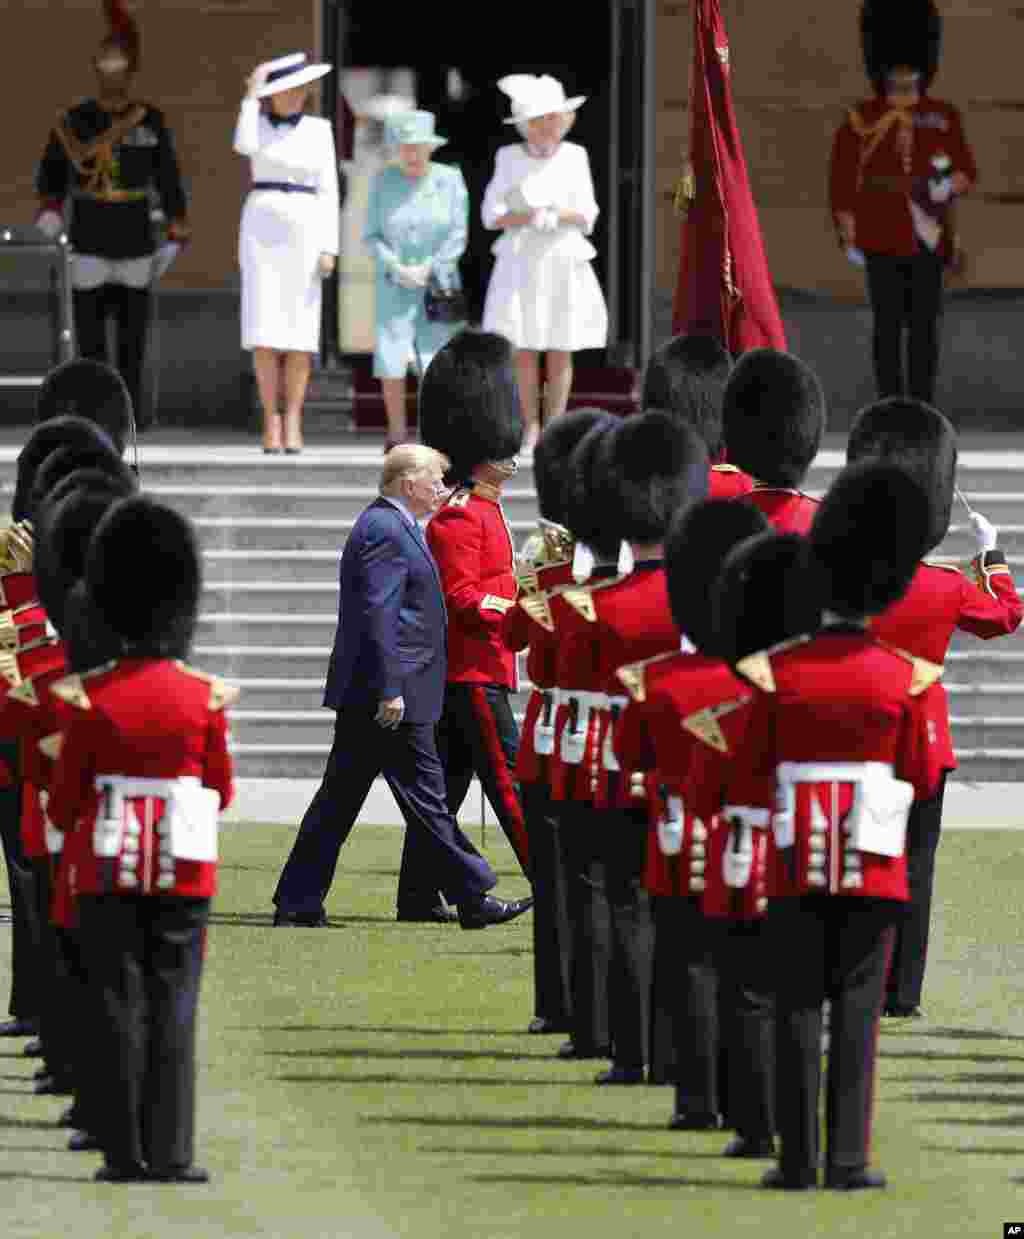 پرزیدنت ترامپ در مراسم رسمی با حضور ملکه بریتانیا در کاخ باکینگهام از مقابل گارد ویژه عبور می کند.